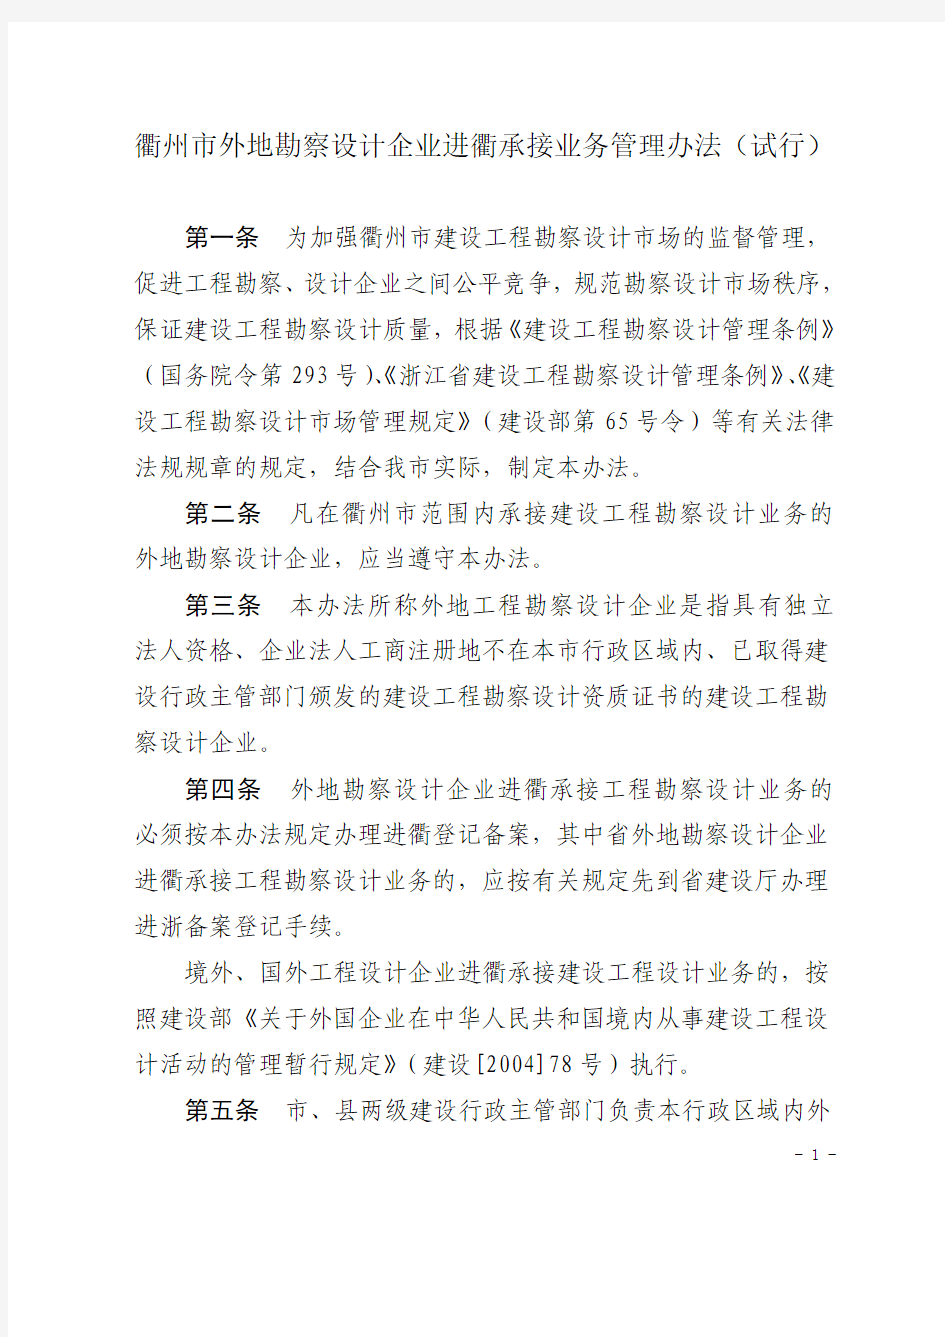 衢州市建设局关于印发《衢州市外勘察设计企业备案的要求